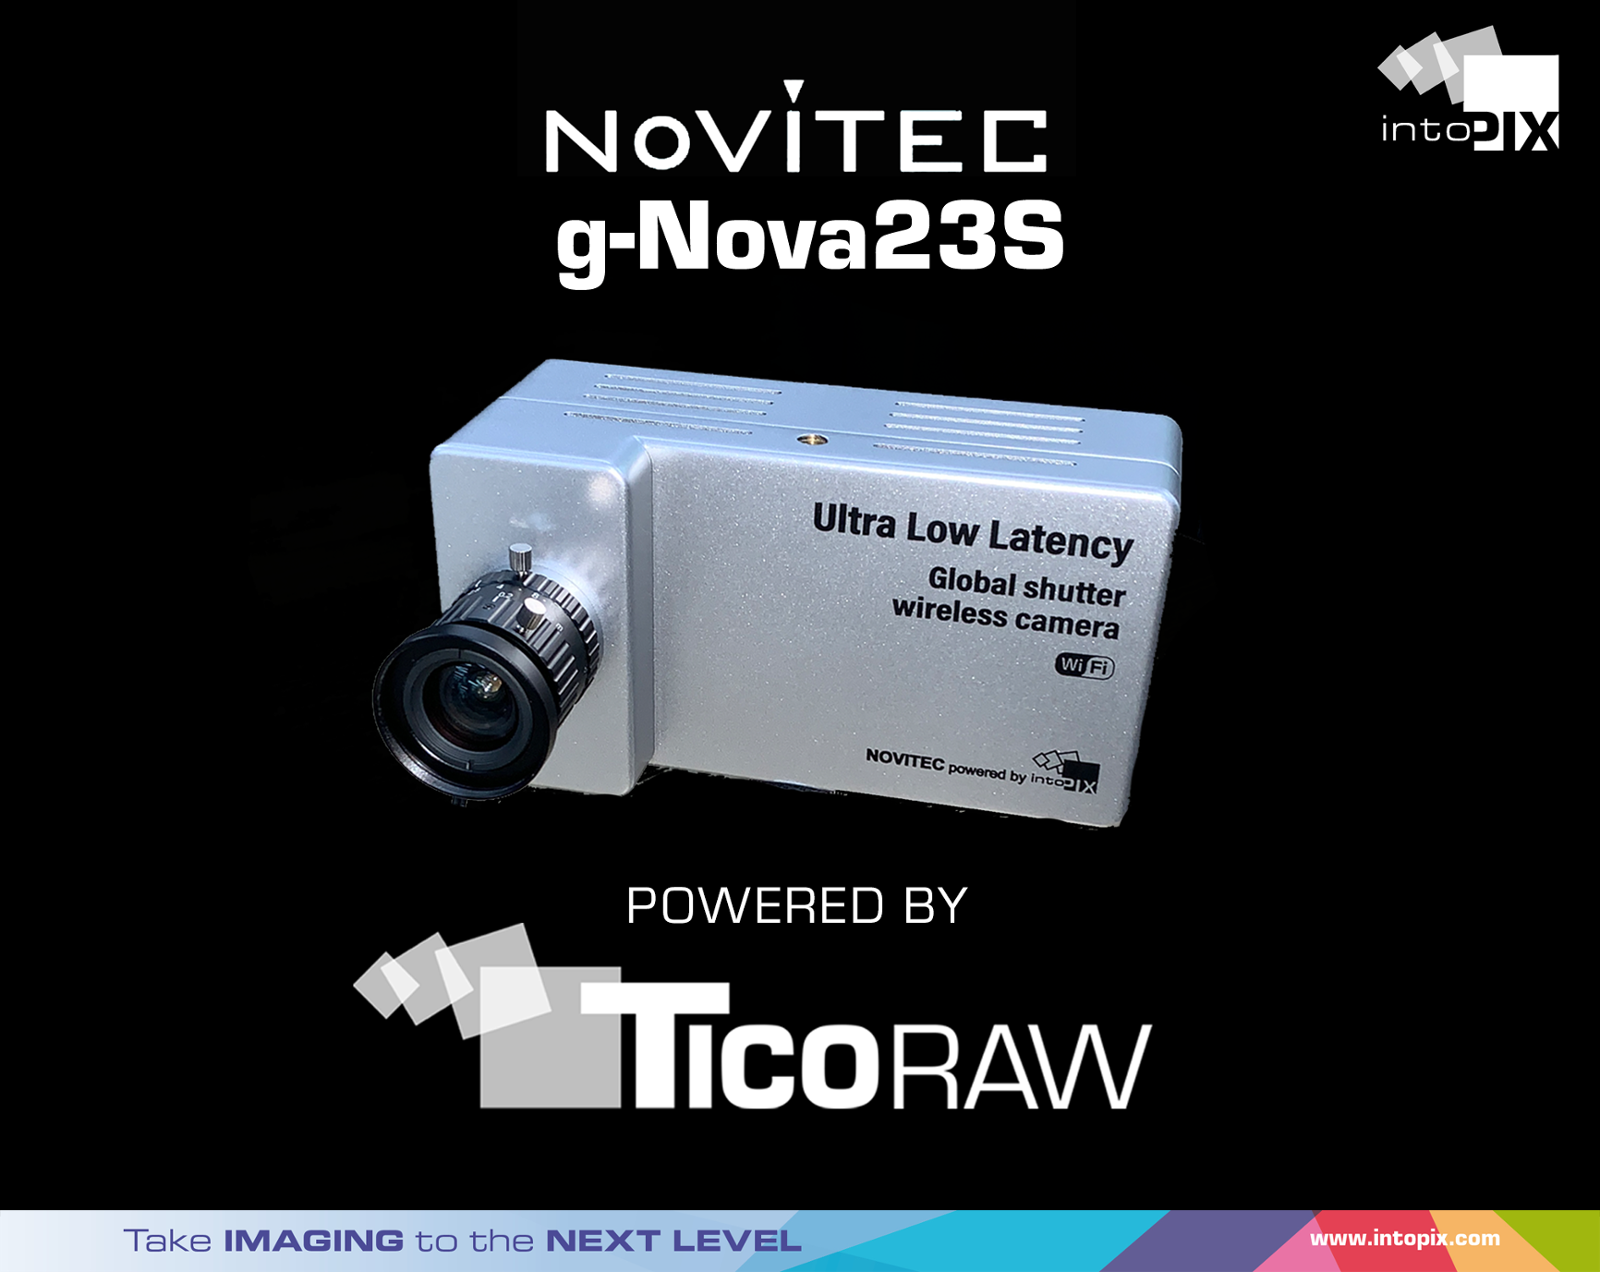 intoPIXは、Novitec社の産業用カメラの新ラインアップにTicoRAWが搭載されることを発表